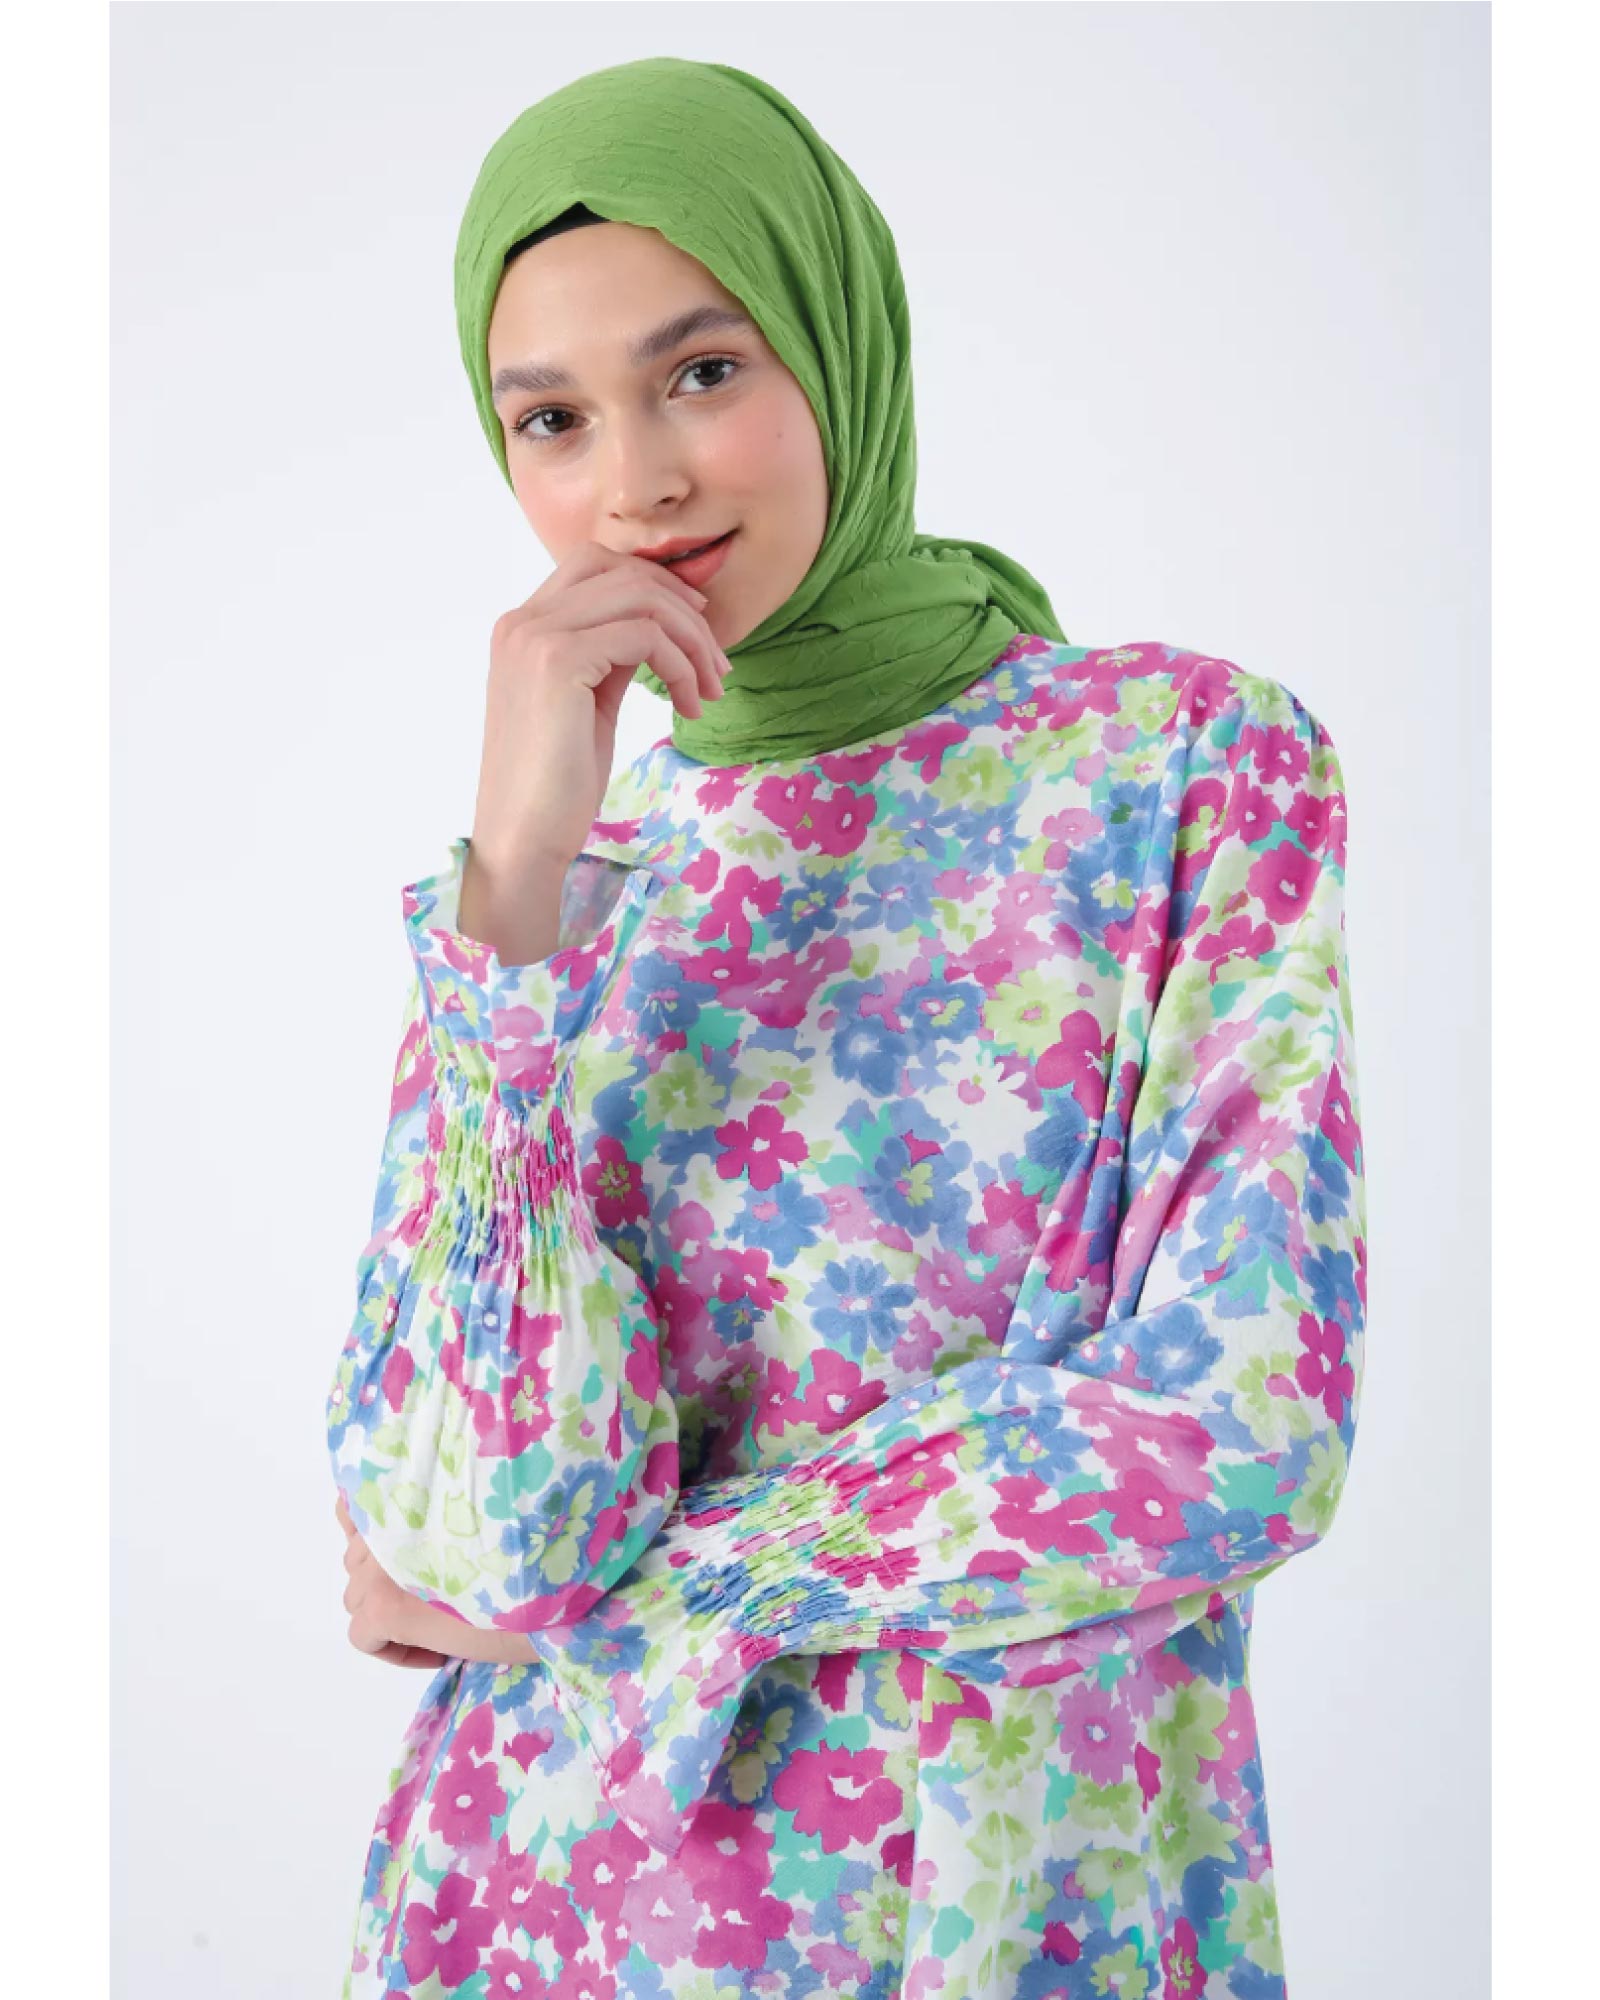 Hijab- Viskose-Rock mit Rüschen am Saum und gemustertes Tunika mit Rüschen an den Ärmeln